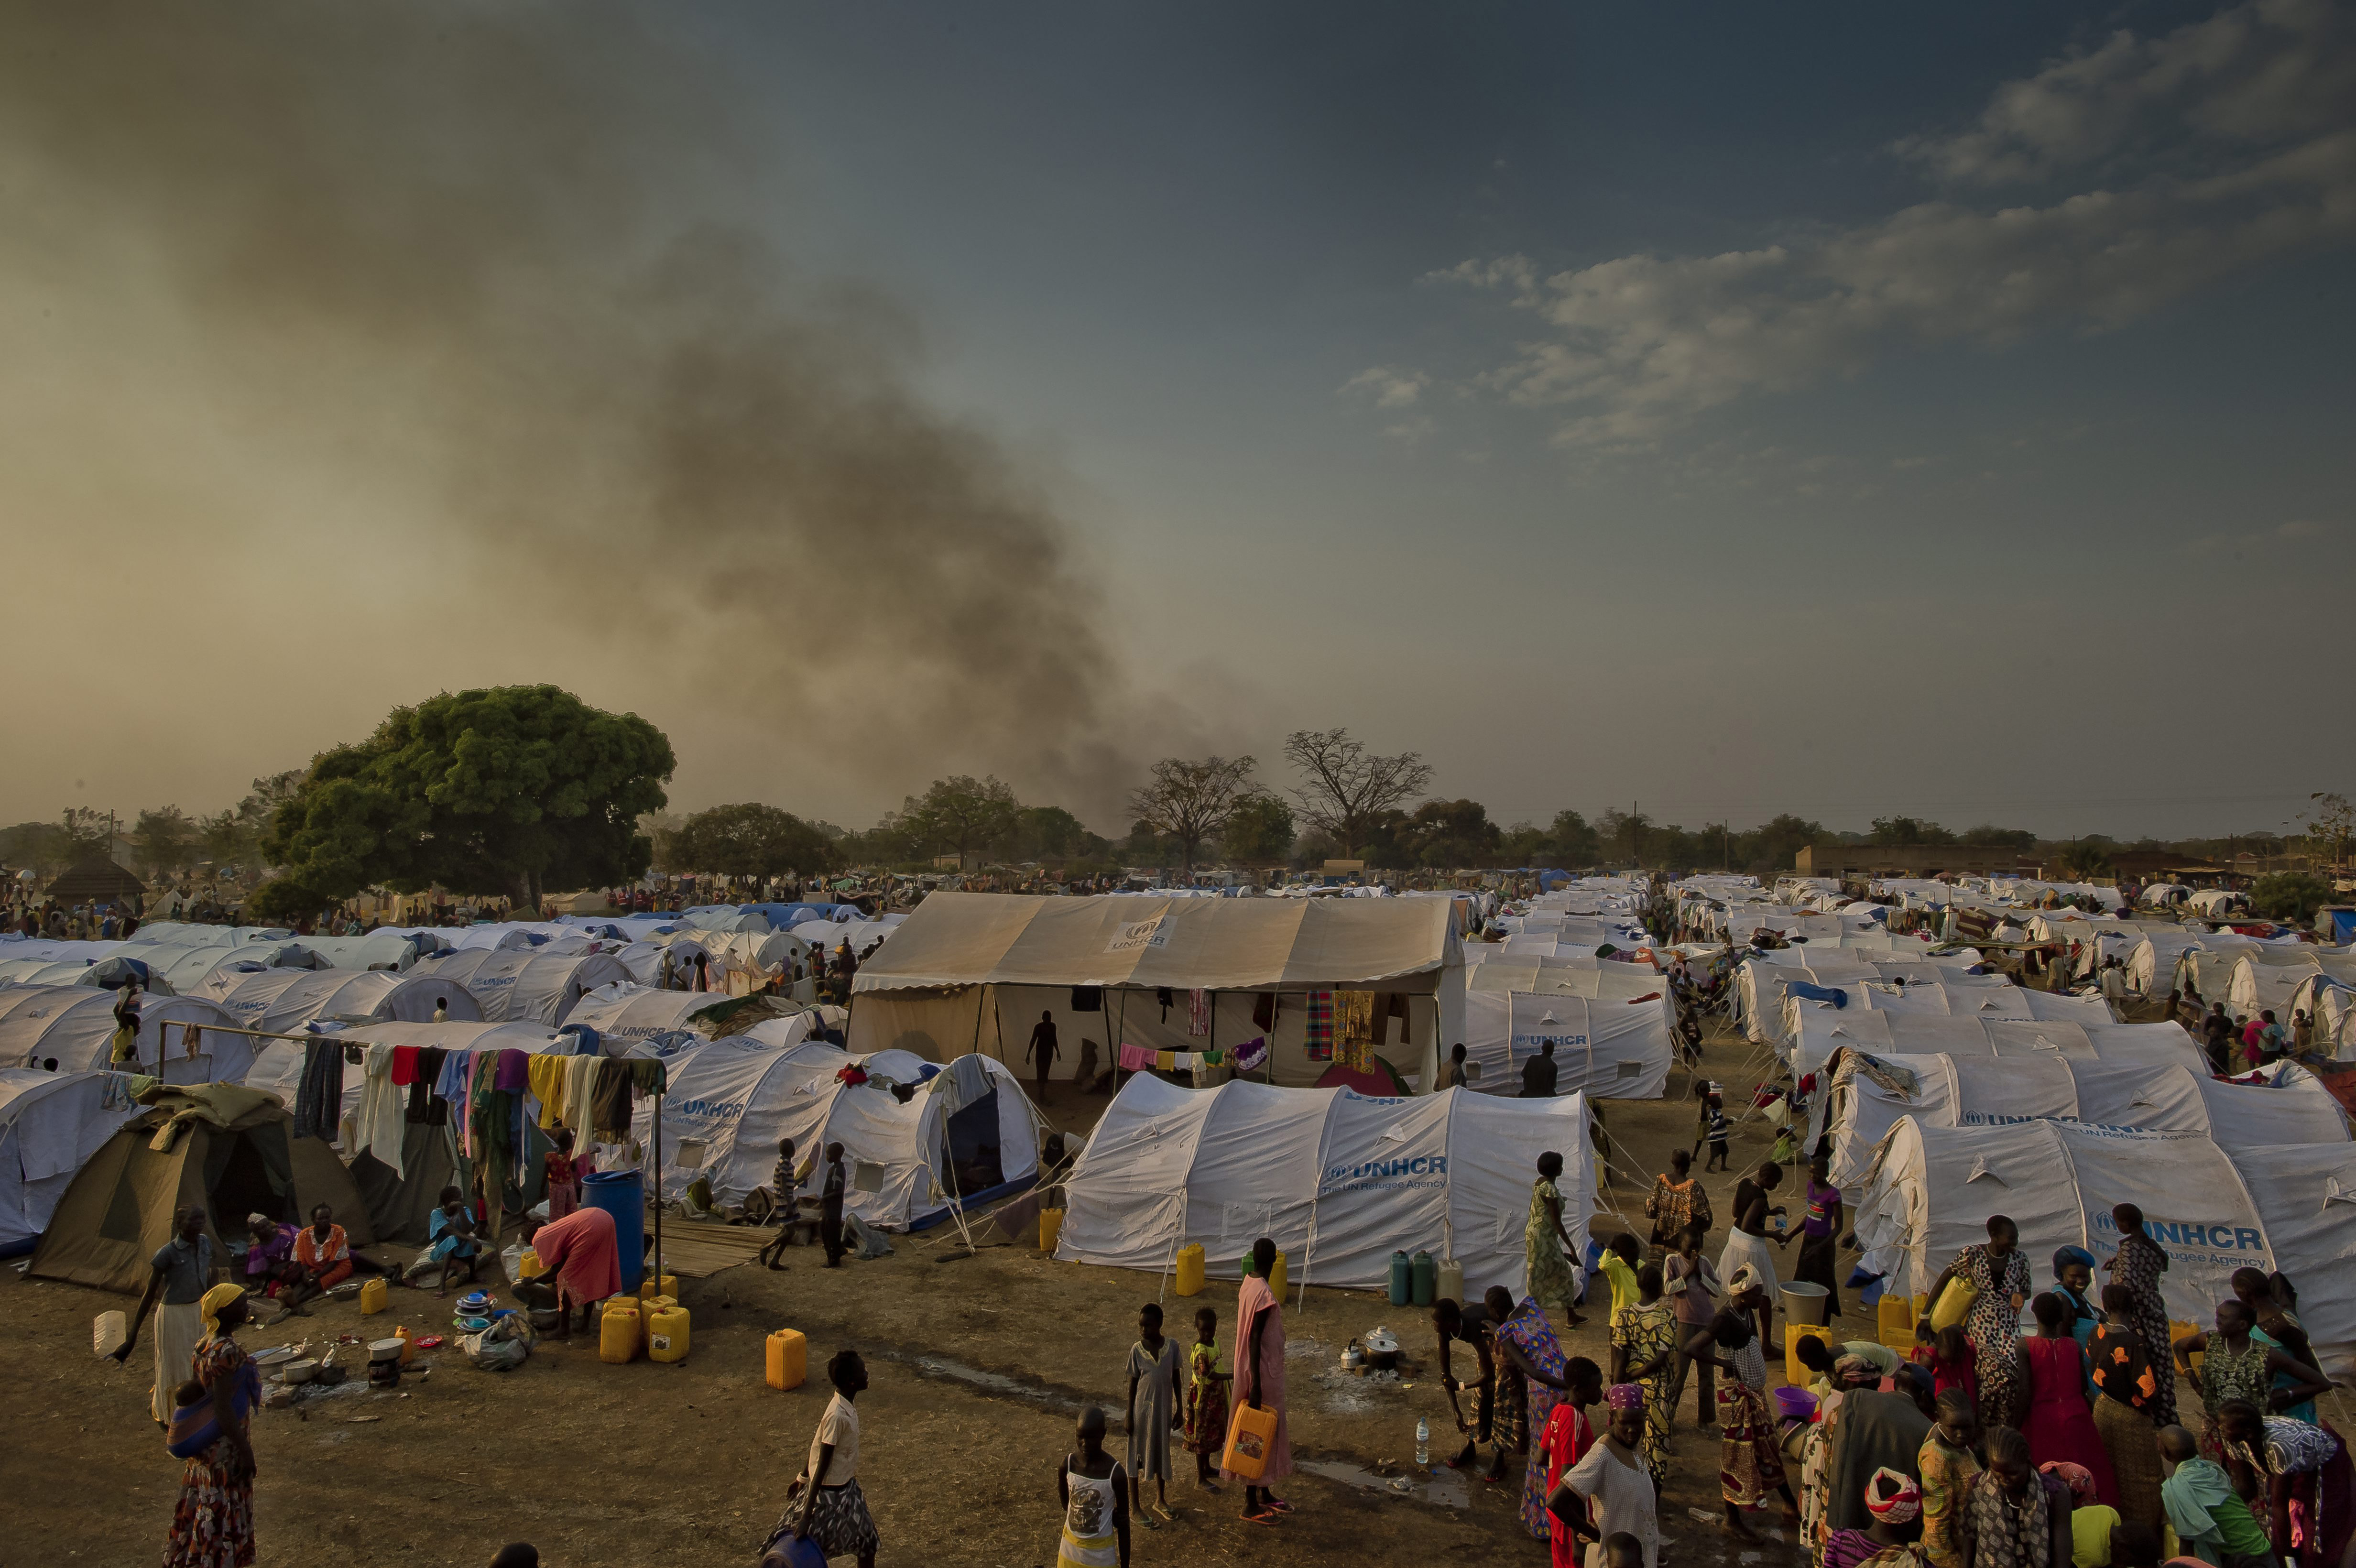 收容南苏丹难民 – 难民署建新营､扩建原本营地